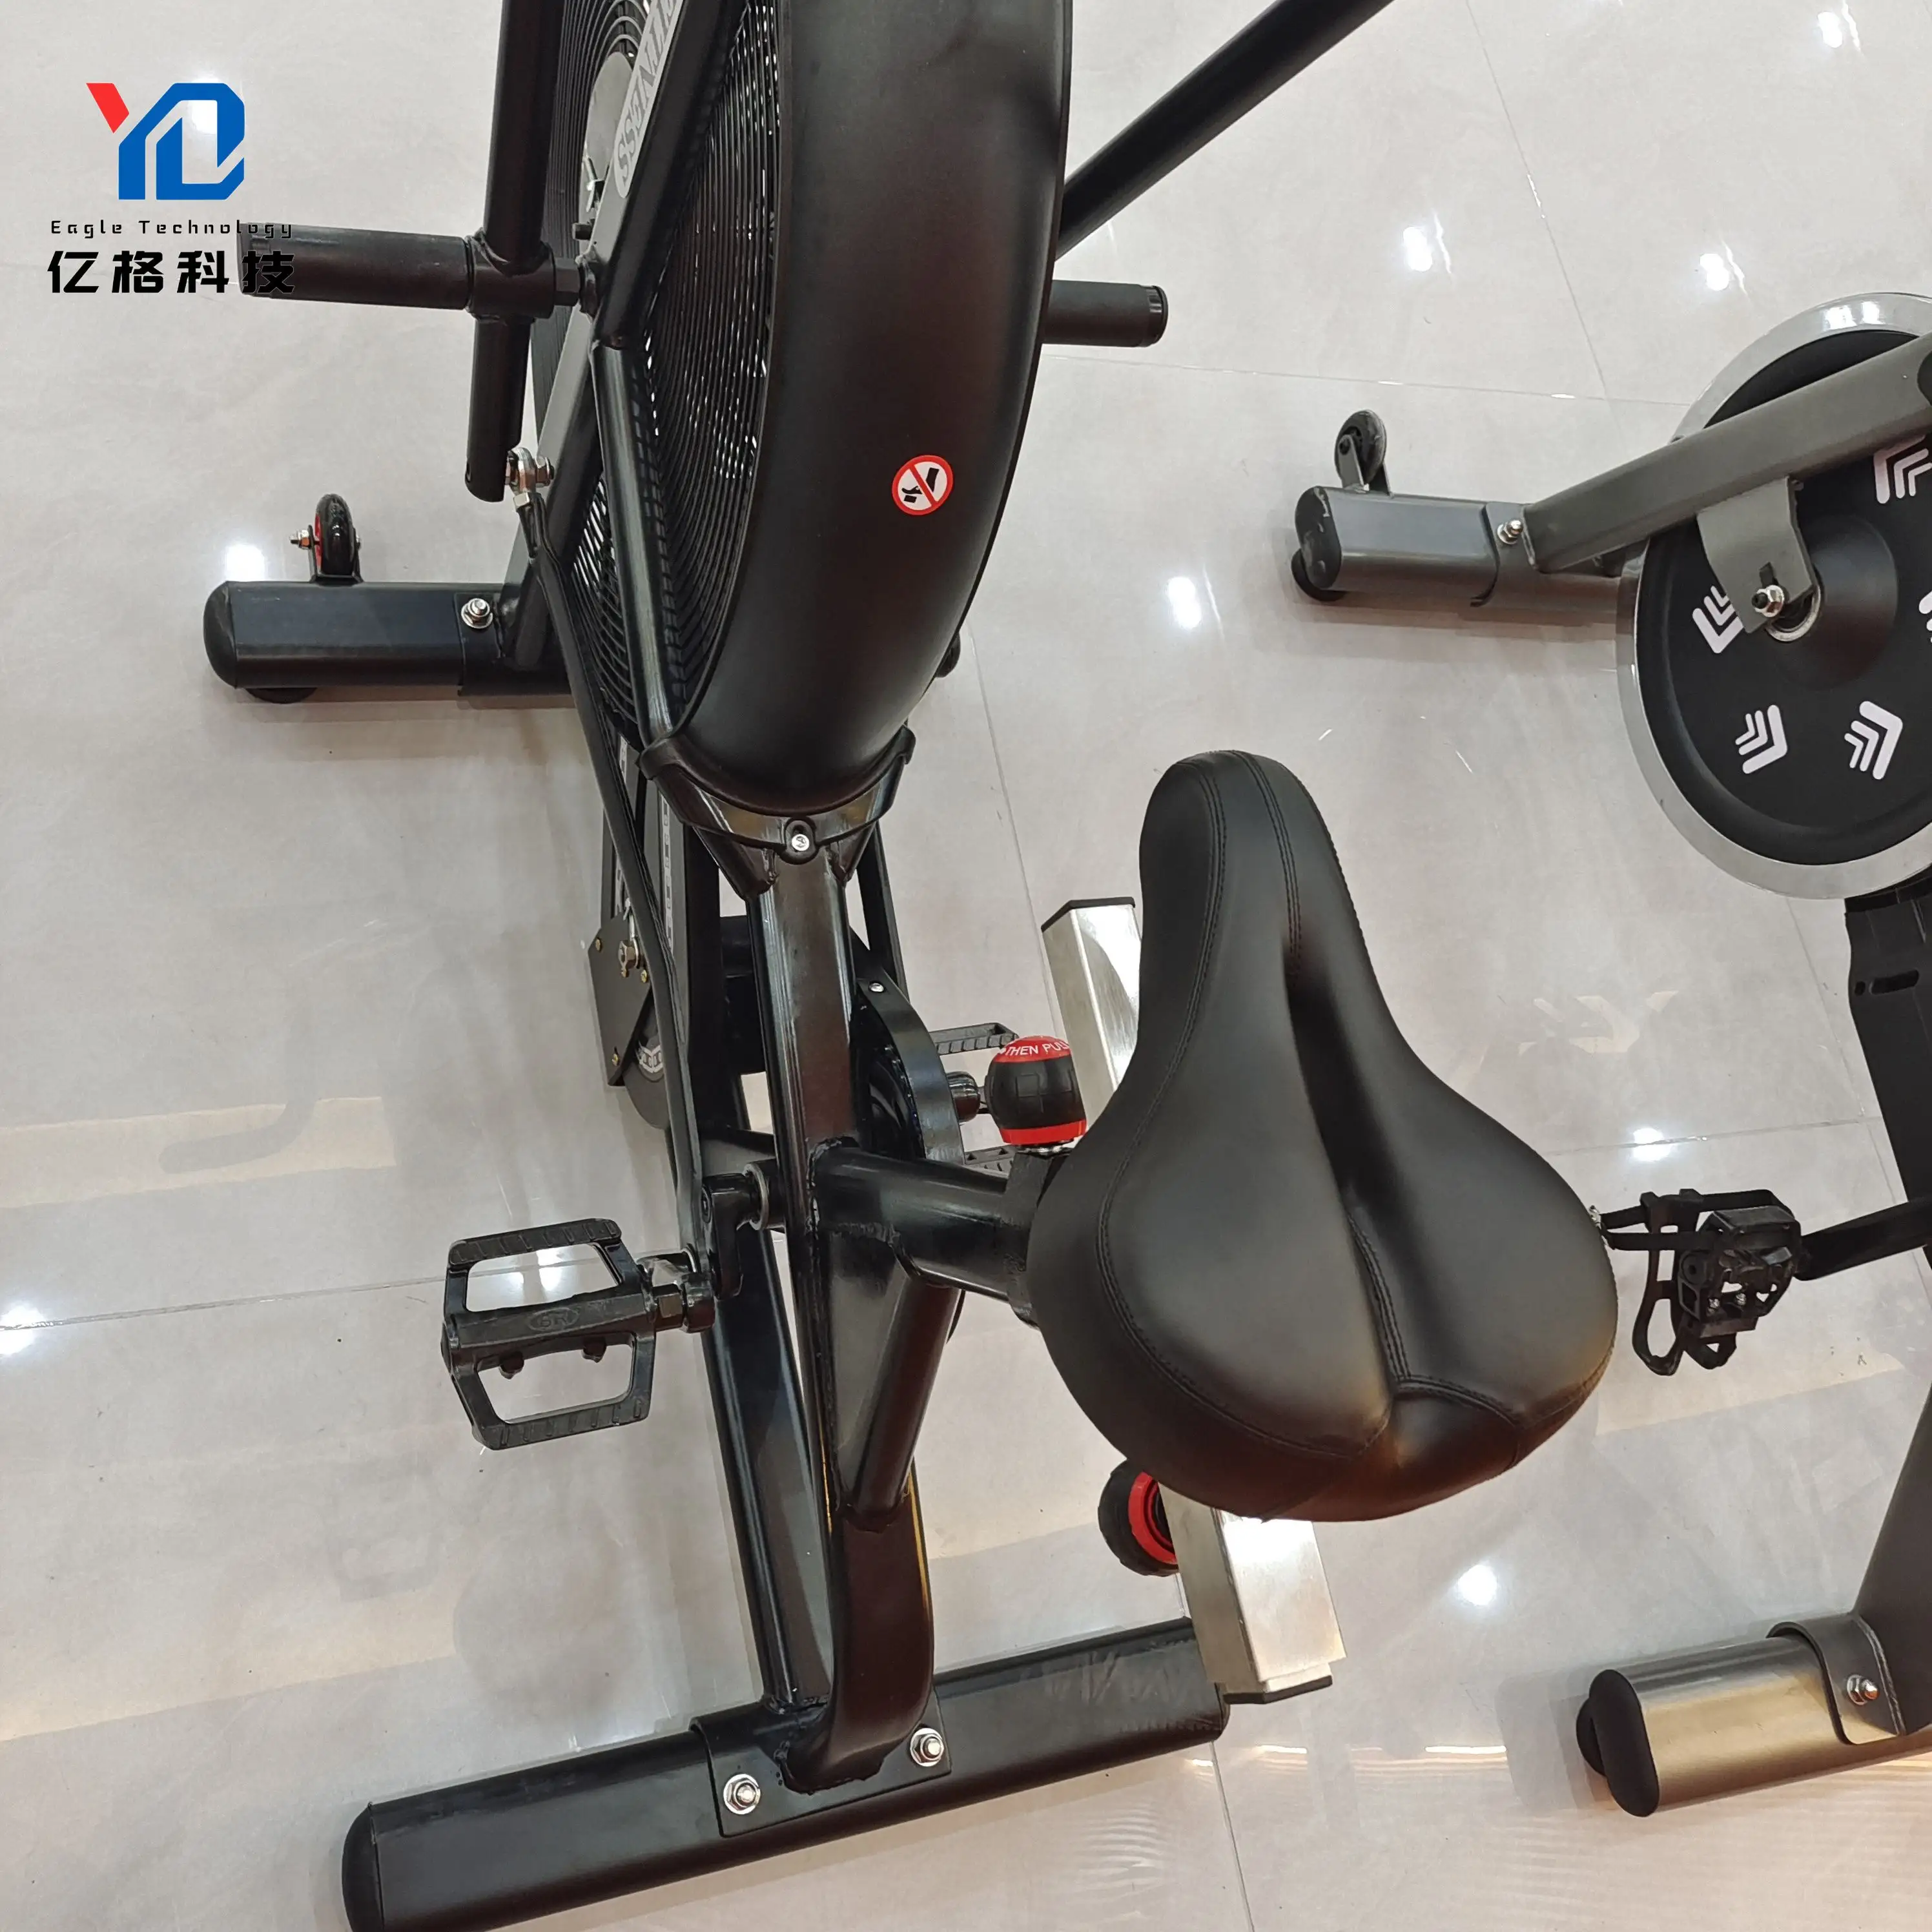 YG-F002 ציוד אופני אוויר להתעמלות פנימית מקצועית למכירה חמה מכונת אופני אוויר אופני אוויר מסחריים